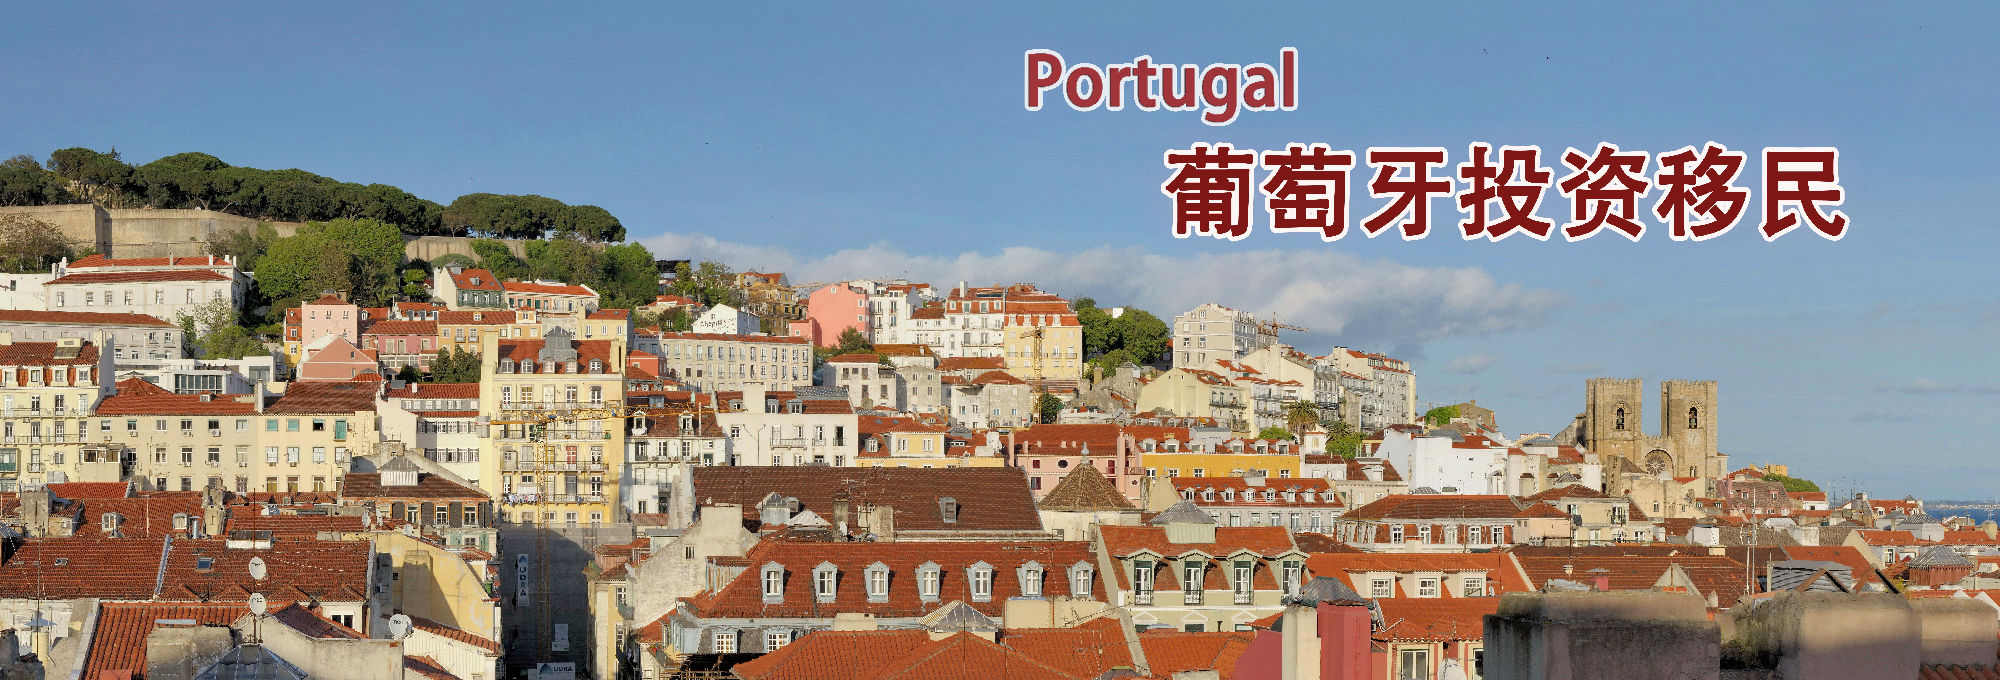 葡萄牙买房移民8月最新数据统计!2016年获批